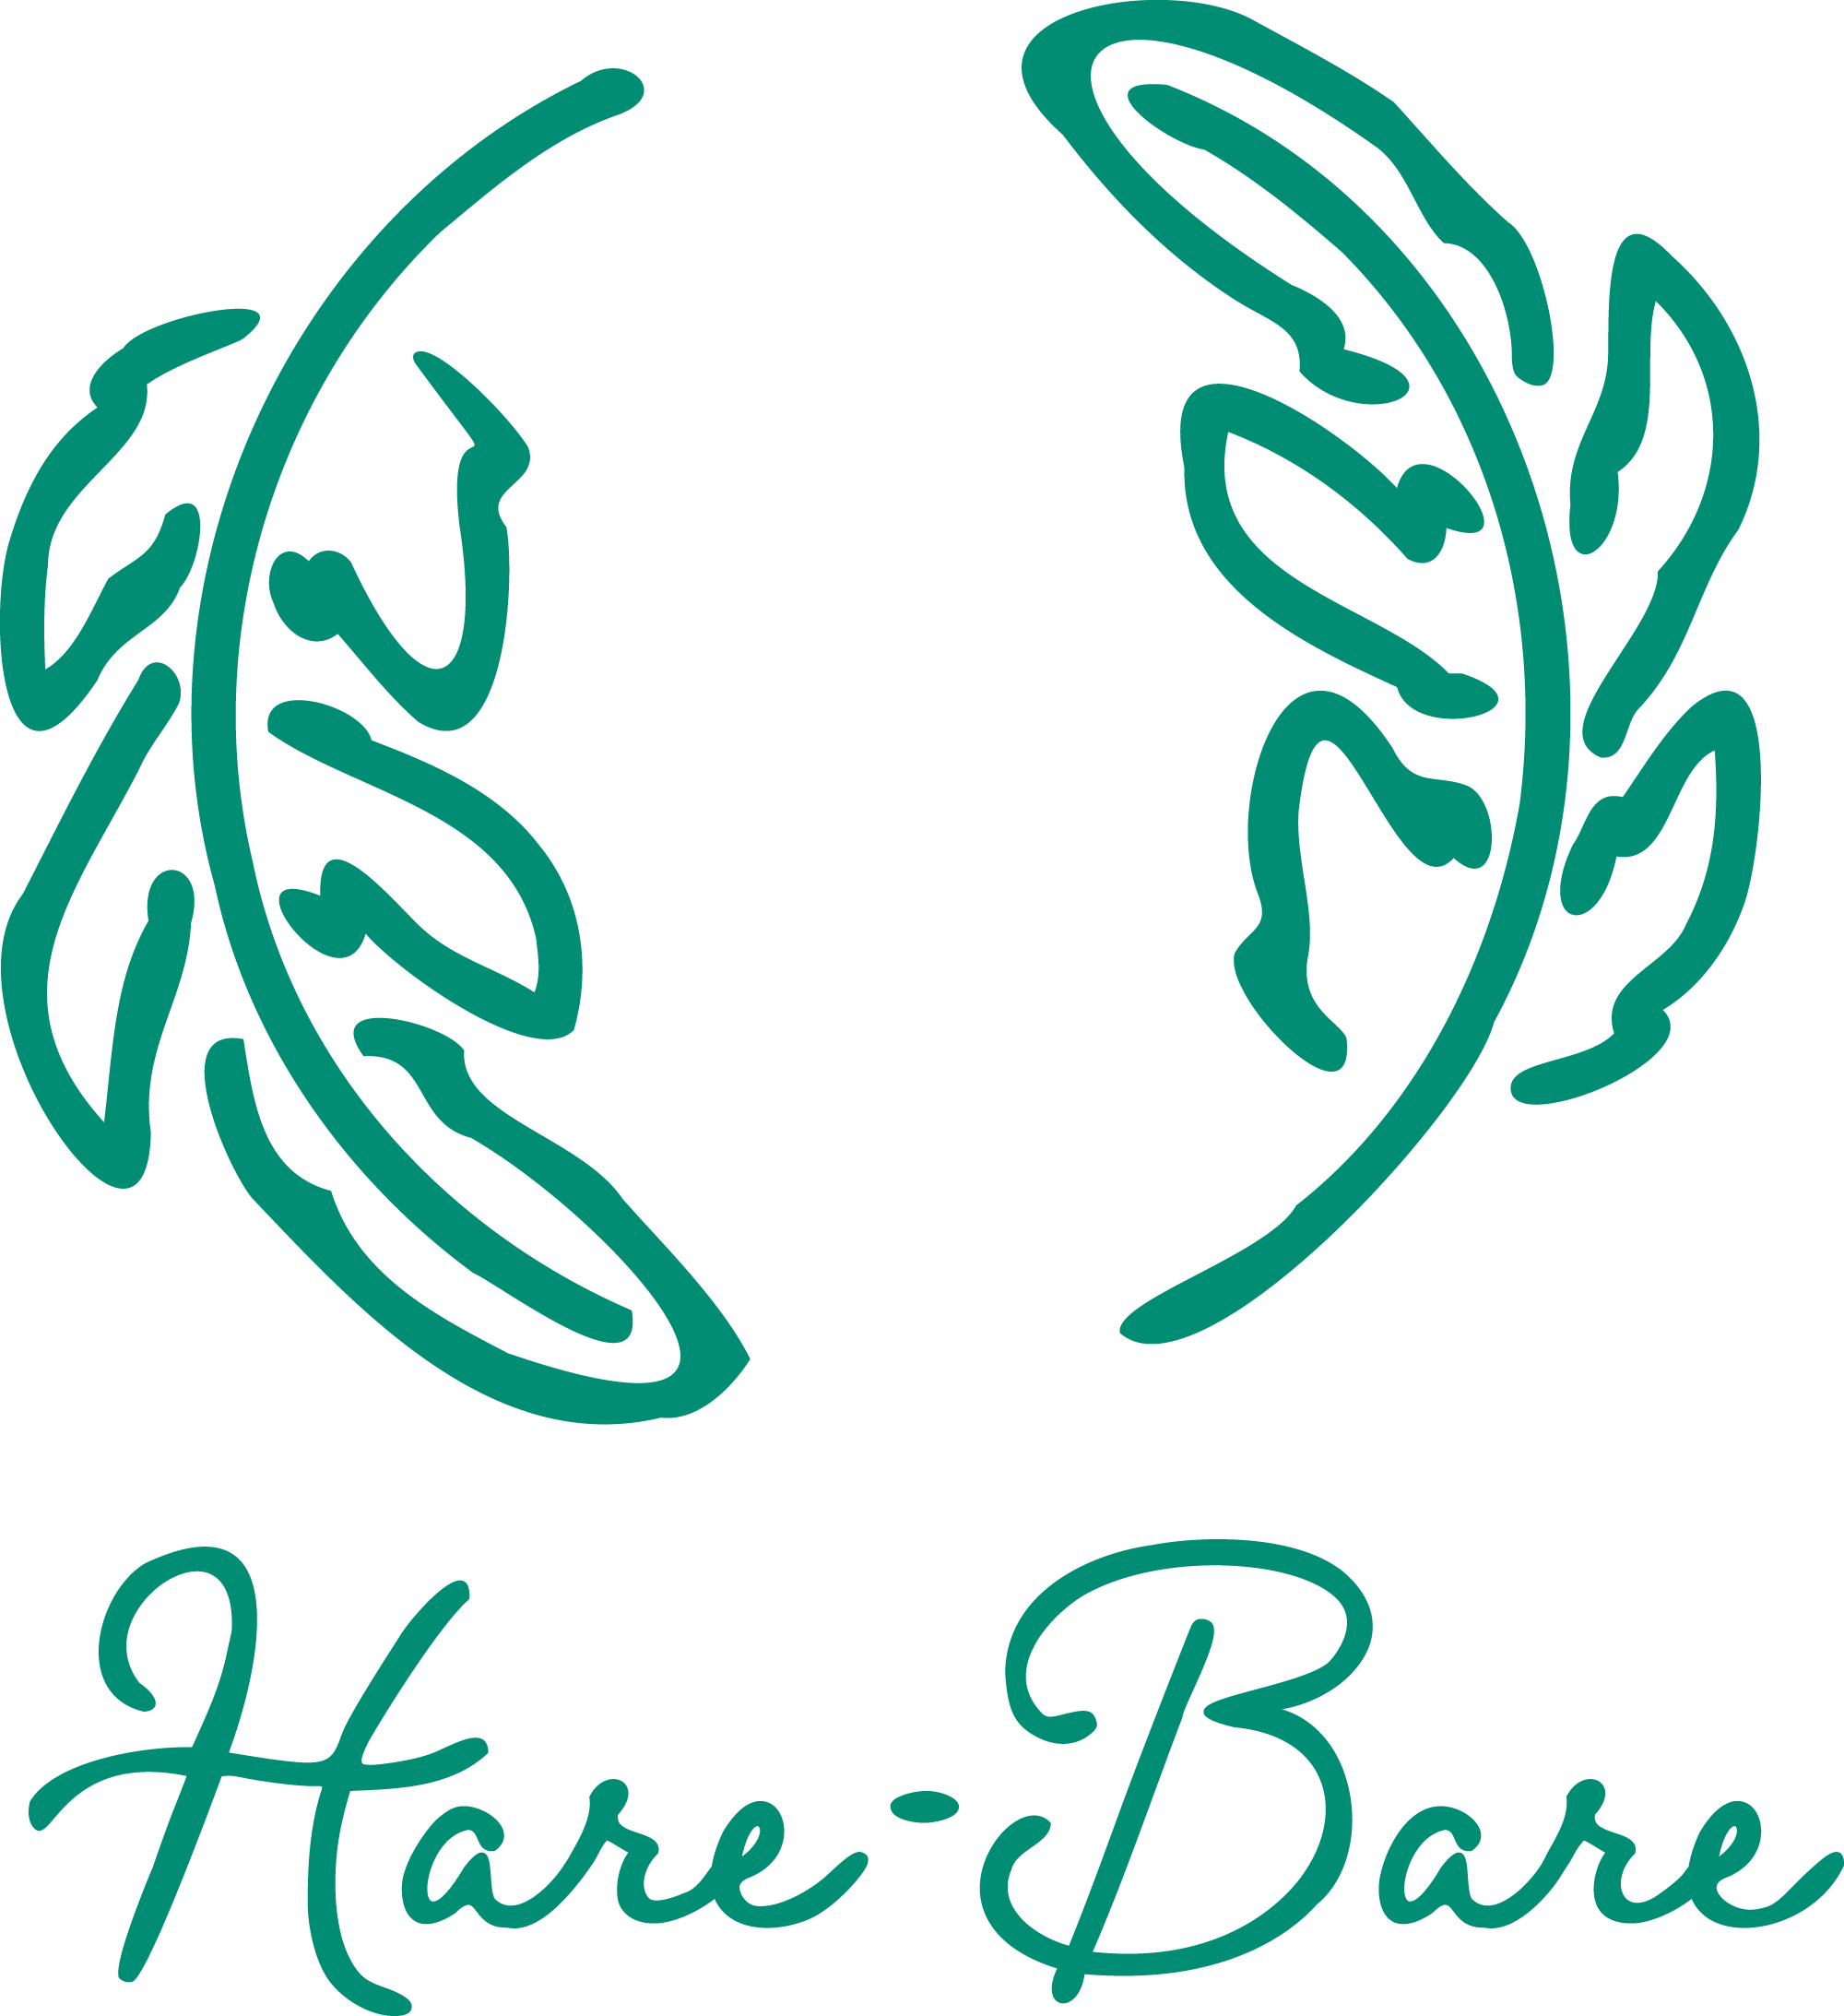 Hare-Bare (ハレバレ)健康と美のよもぎ蒸しリラクゼーションサロン